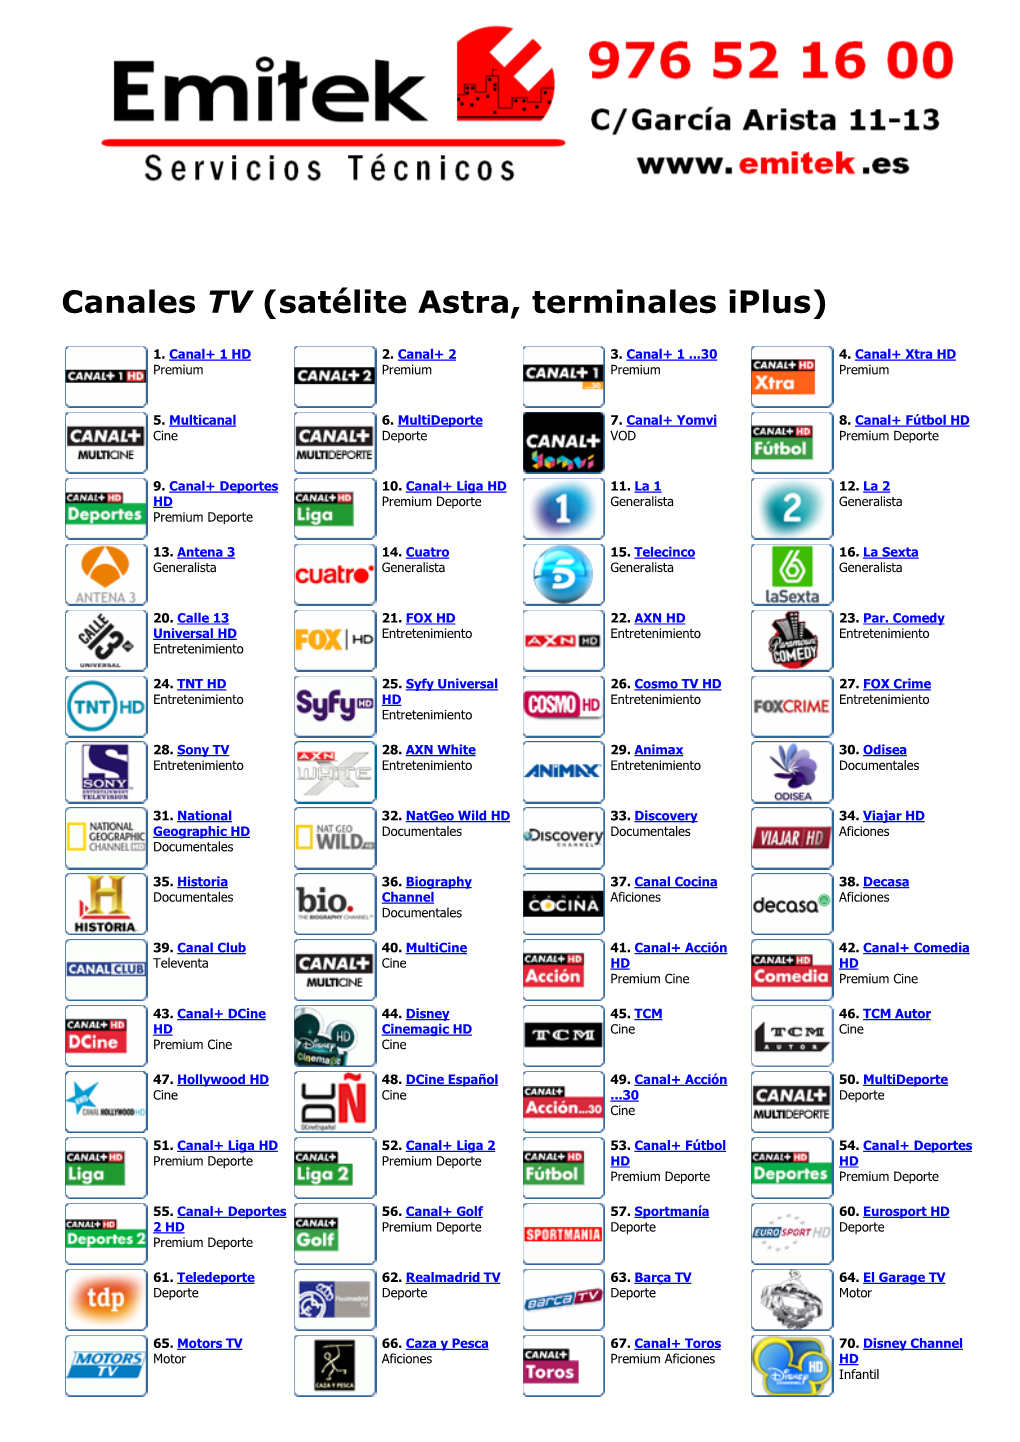 Canales TV (Satélite Astra, Terminales Iplus)